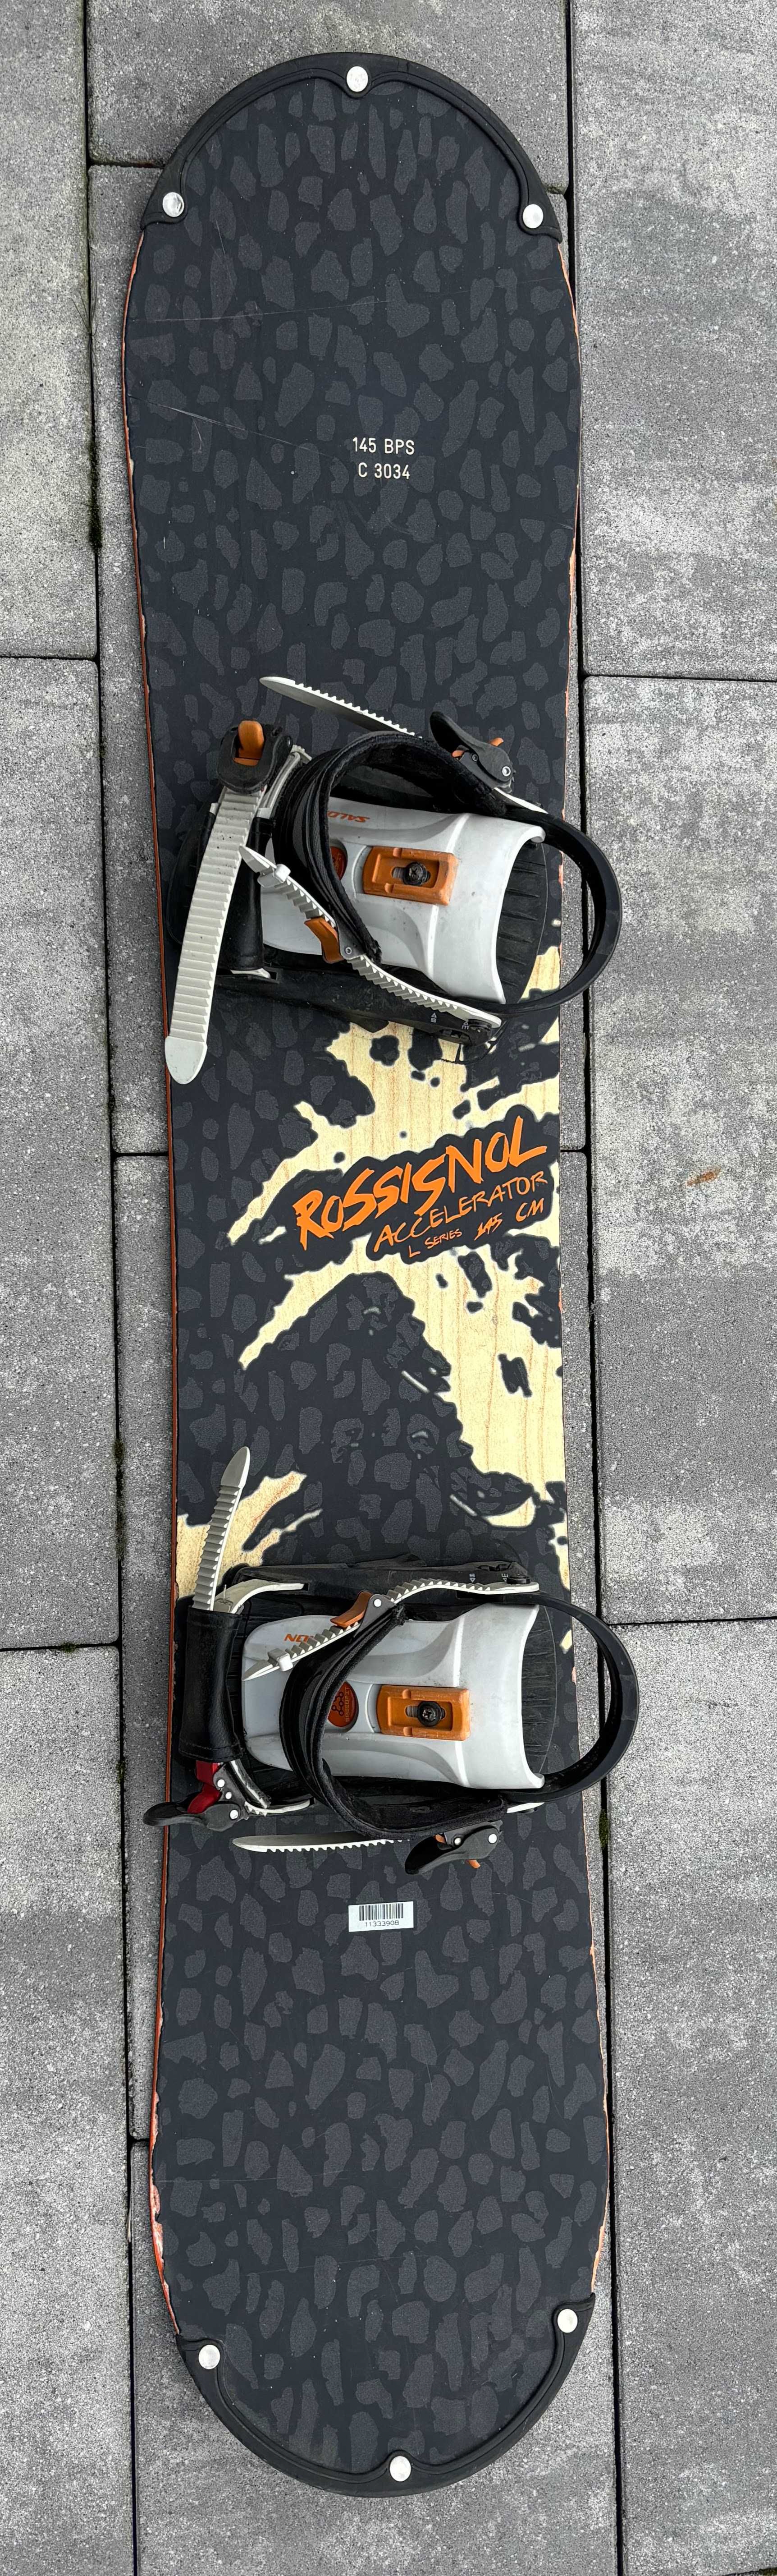 Deska Snowboardowa Rossisnol Accelerator 145 cm z wiązaniami